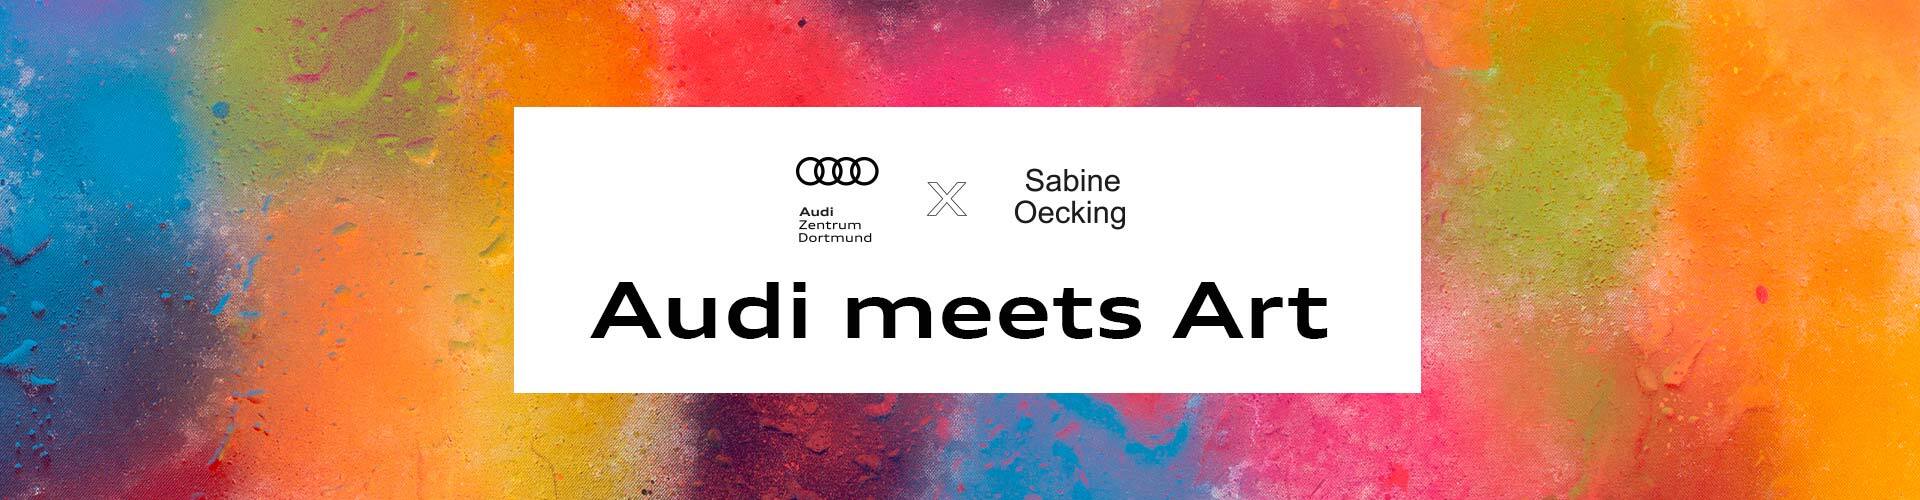 Audi meets Art